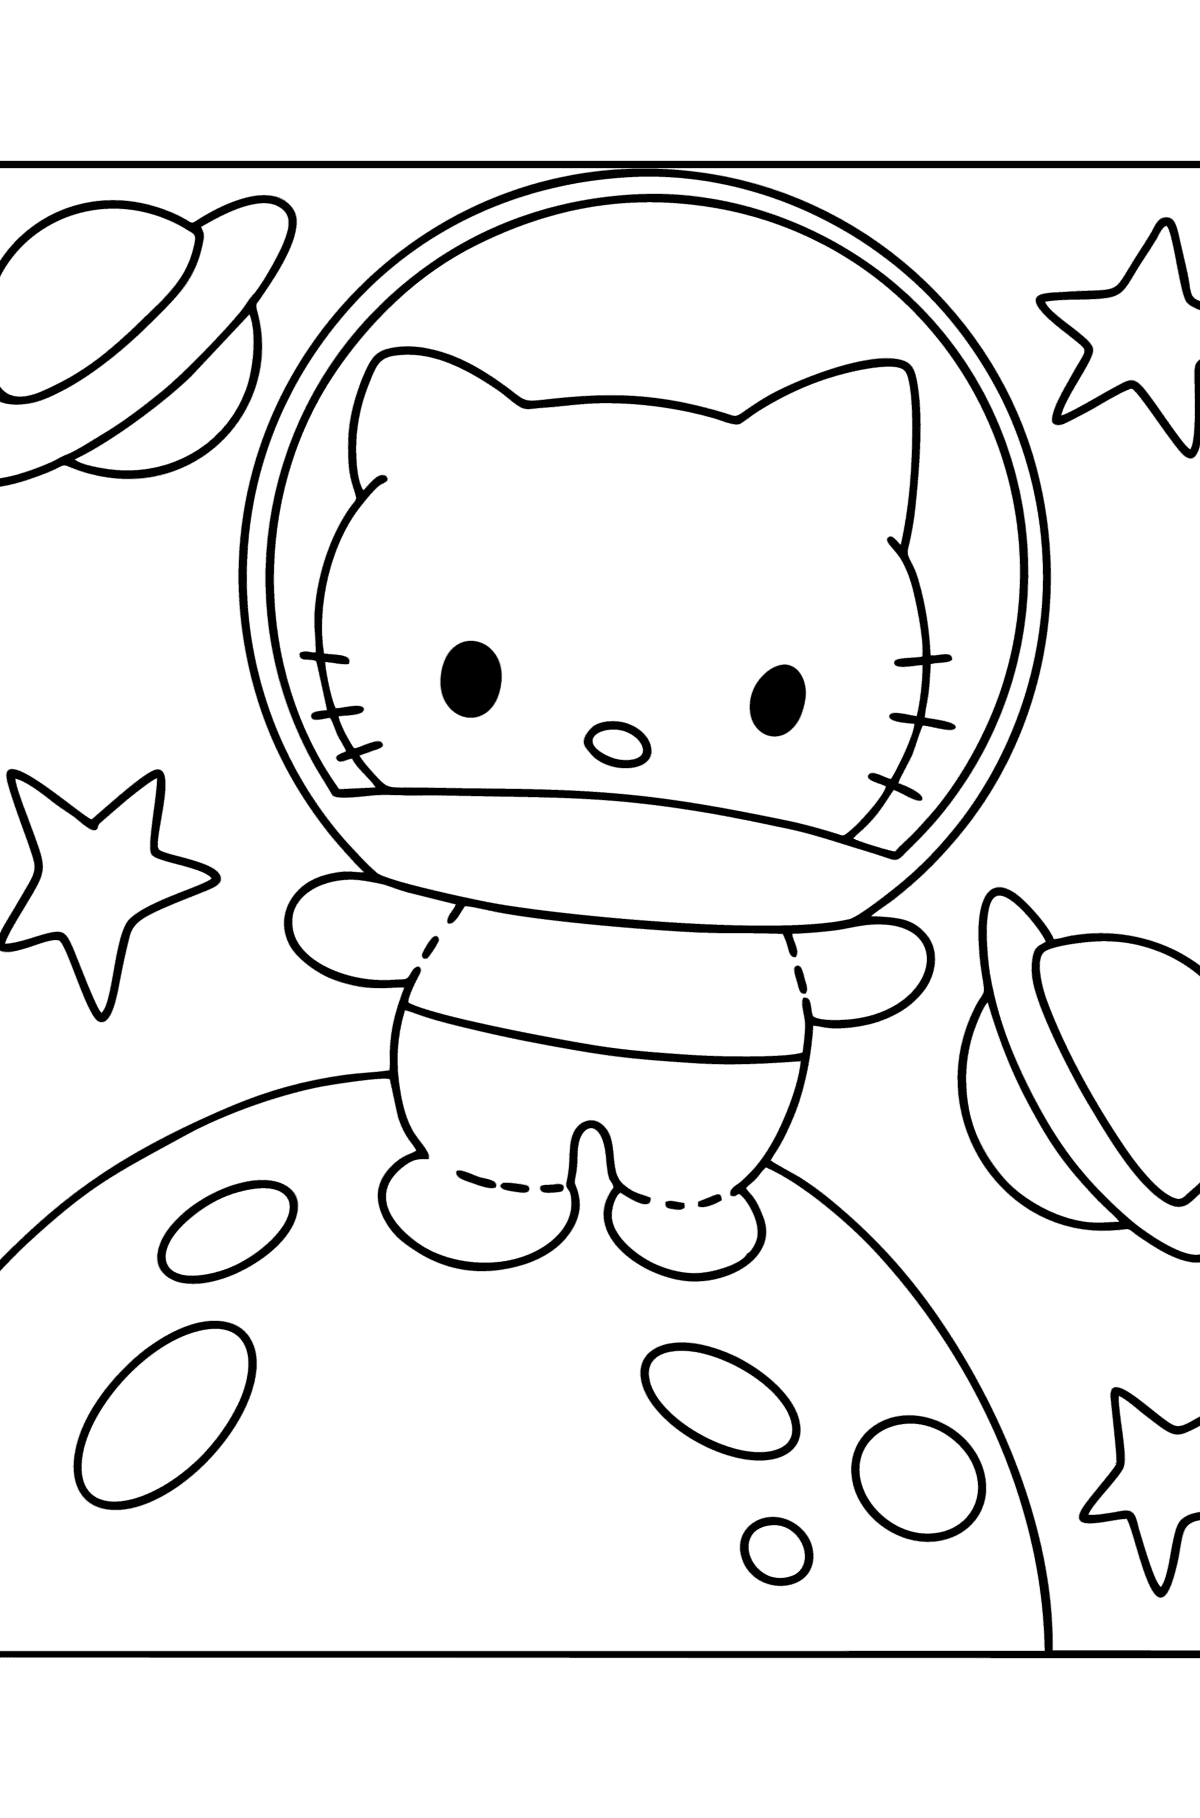 Coloriage - Astronaute Hello Kitty - Coloriages pour les Enfants